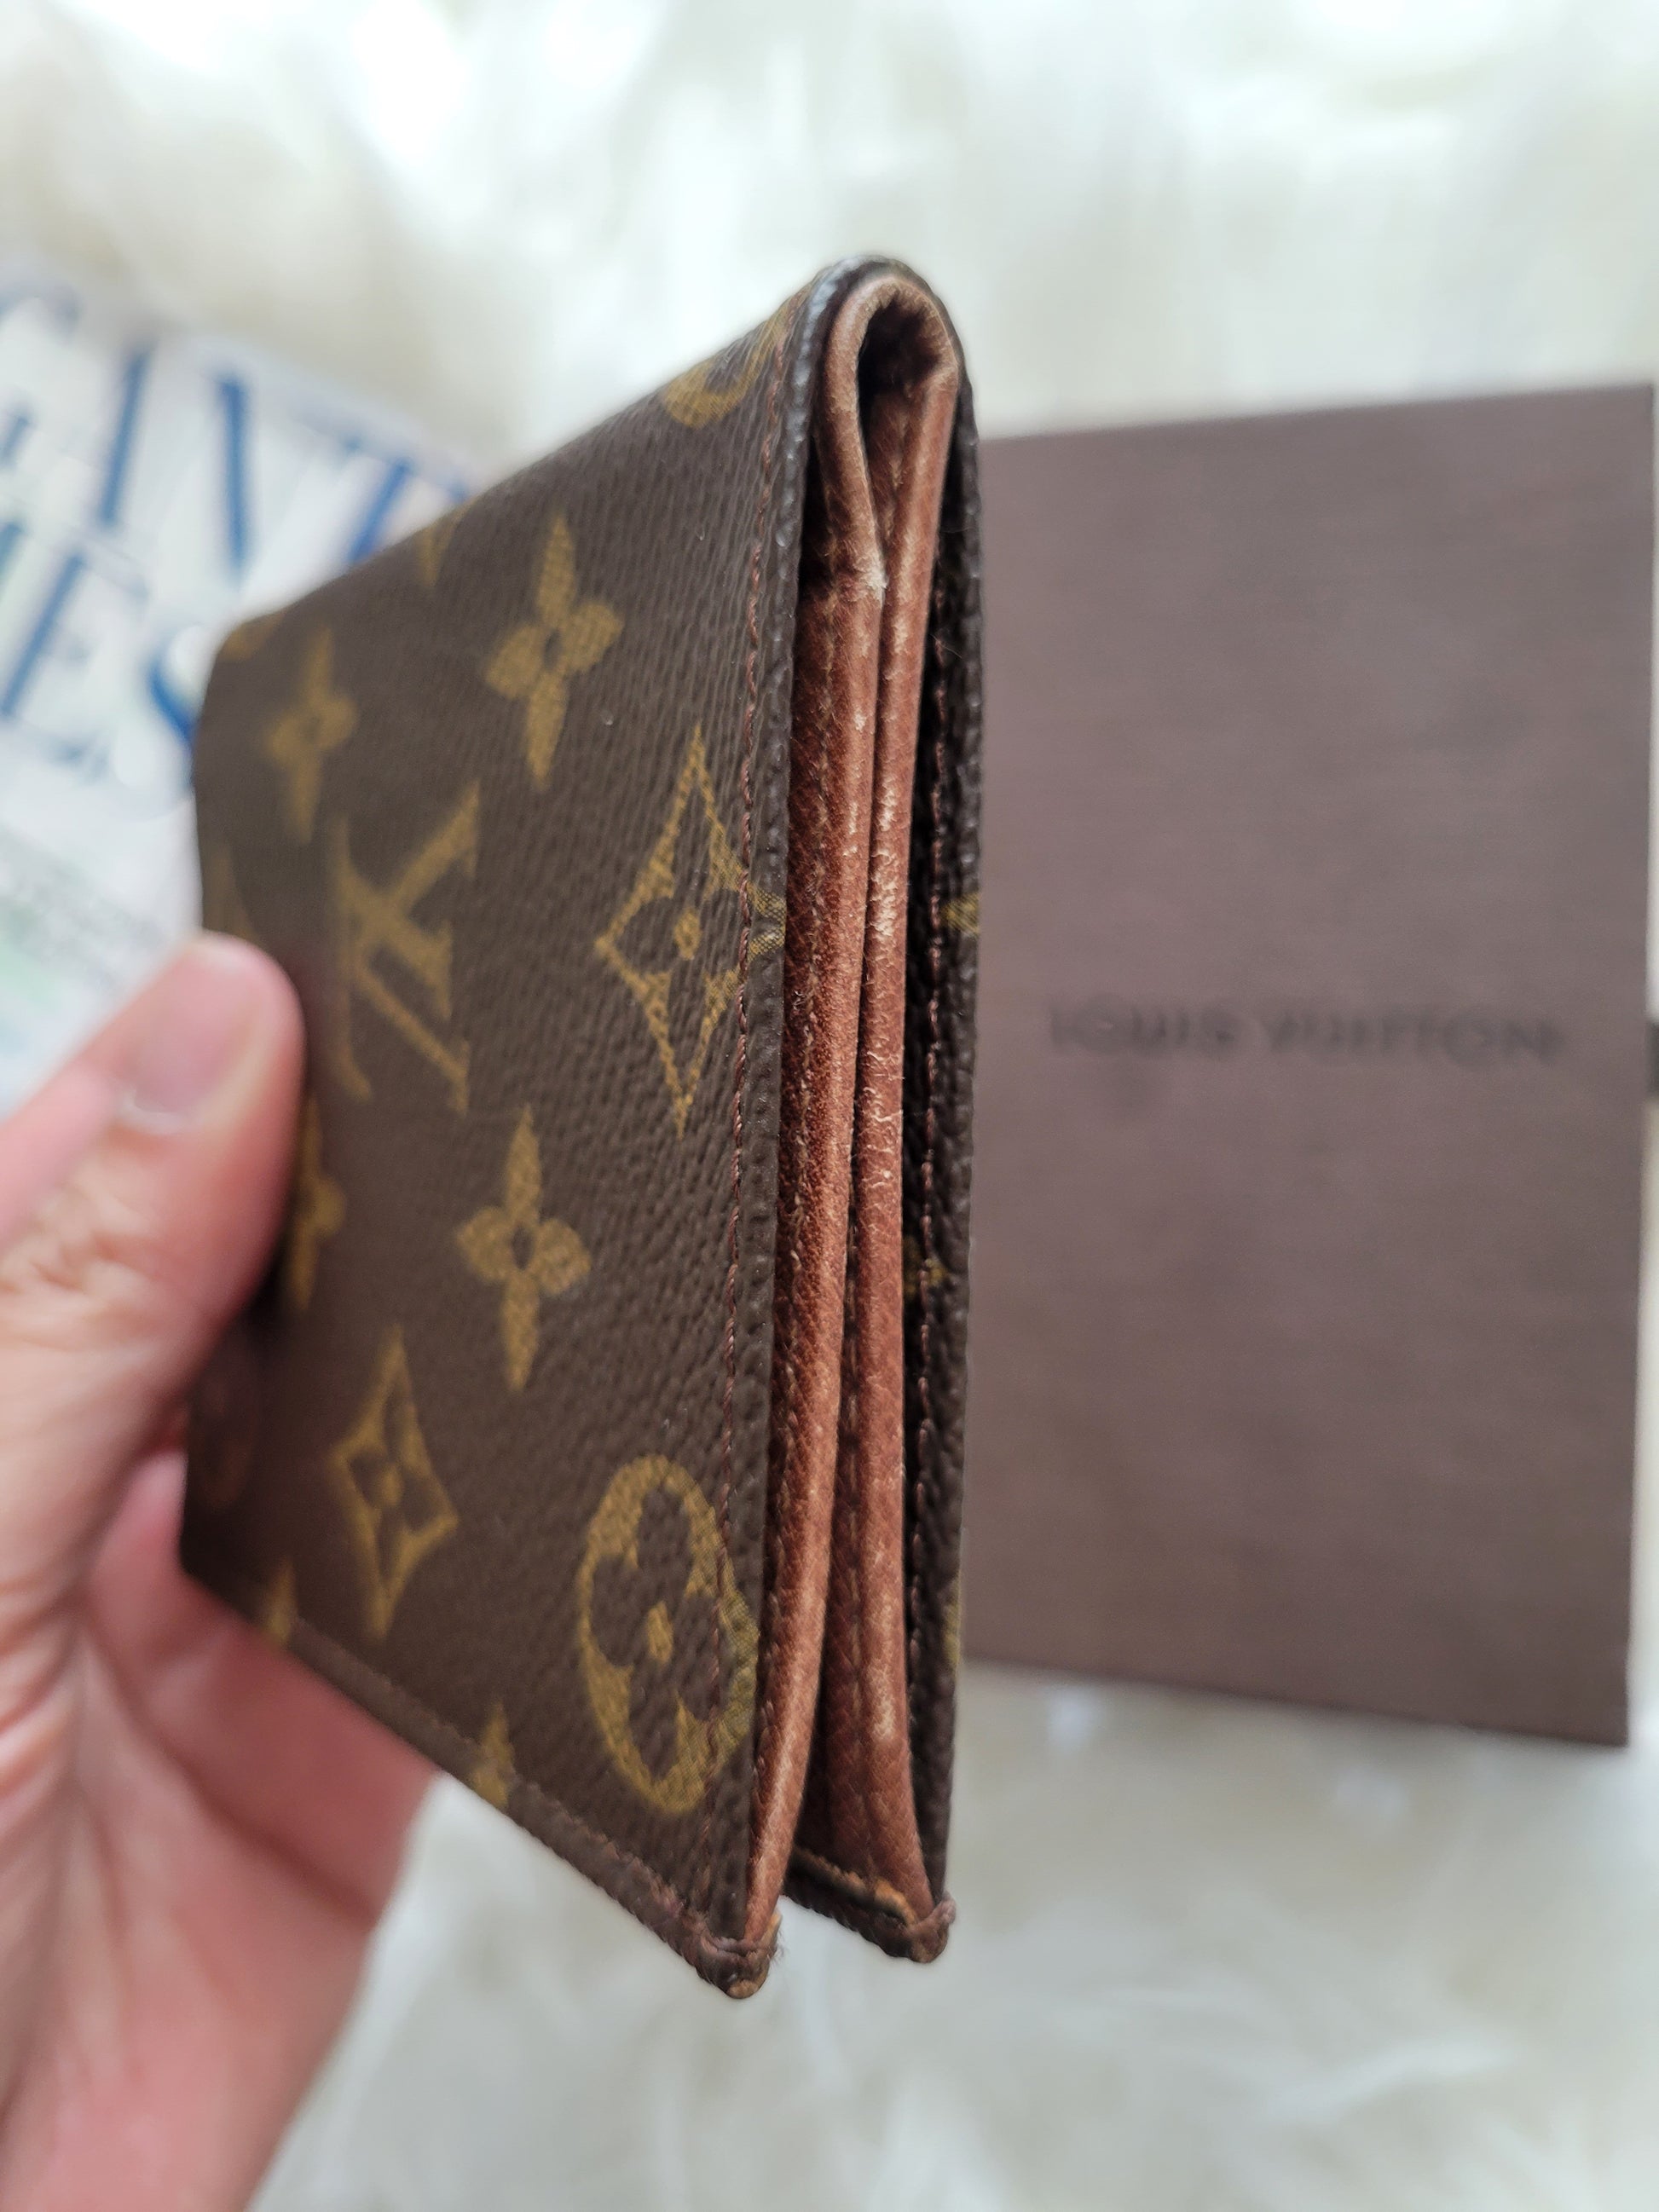 Louis Vuitton Wallet Slim Card Holder or Front Pocket Wallet LV